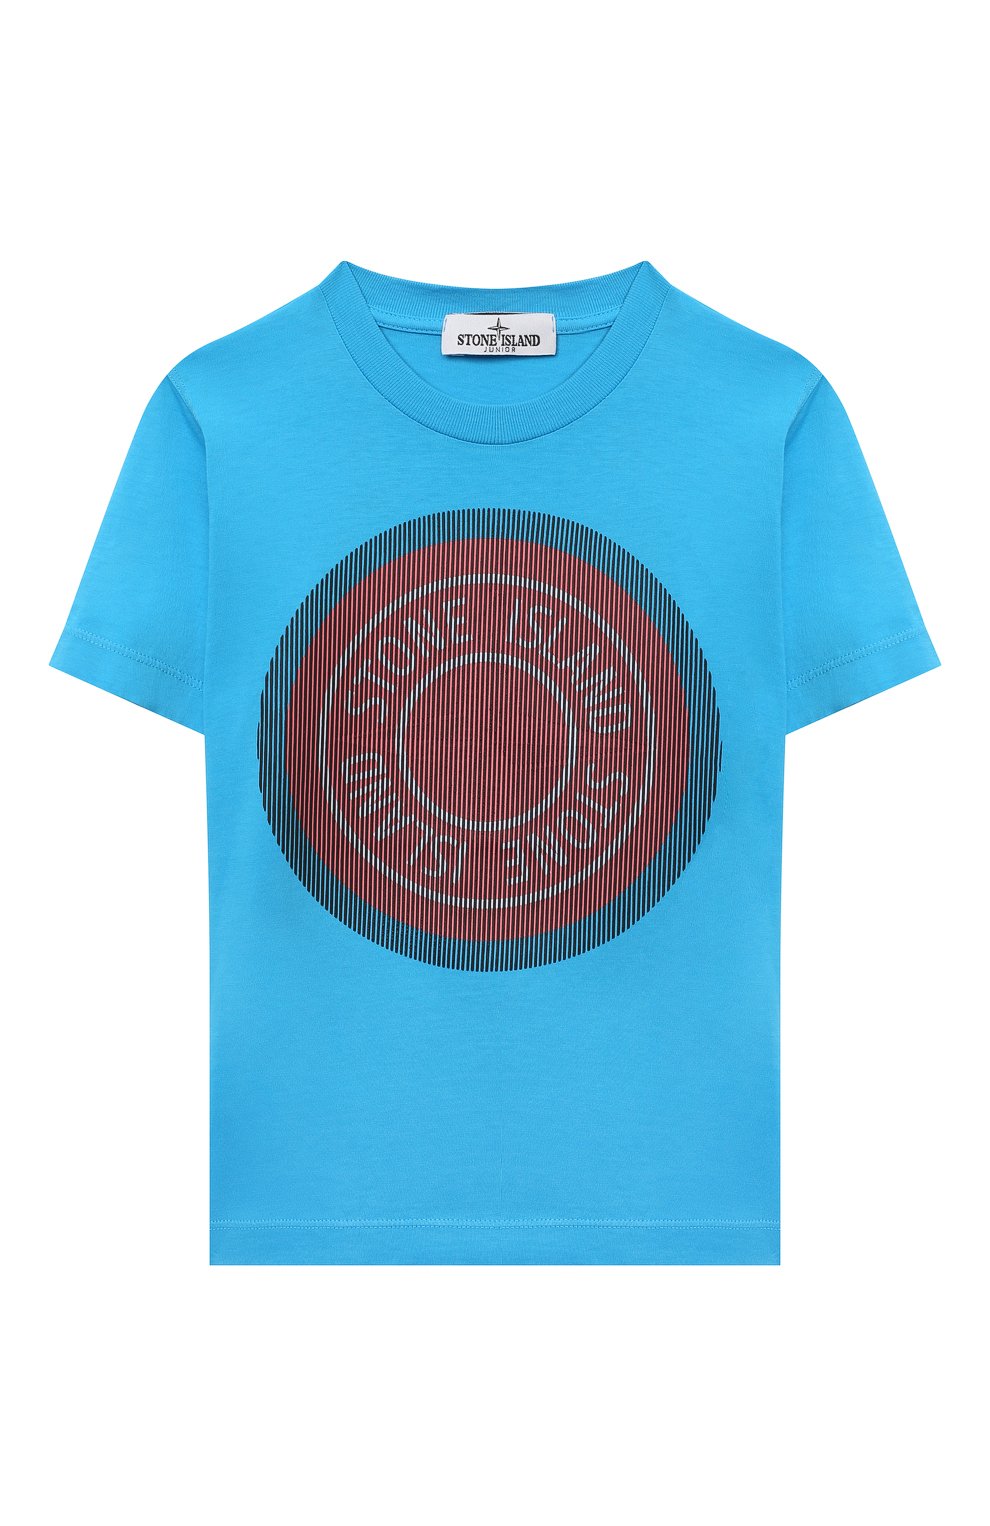 Футболки Stone Island, Хлопковая футболка Stone Island, Тунис, Голубой, Хлопок: 100%;, 12617013  - купить